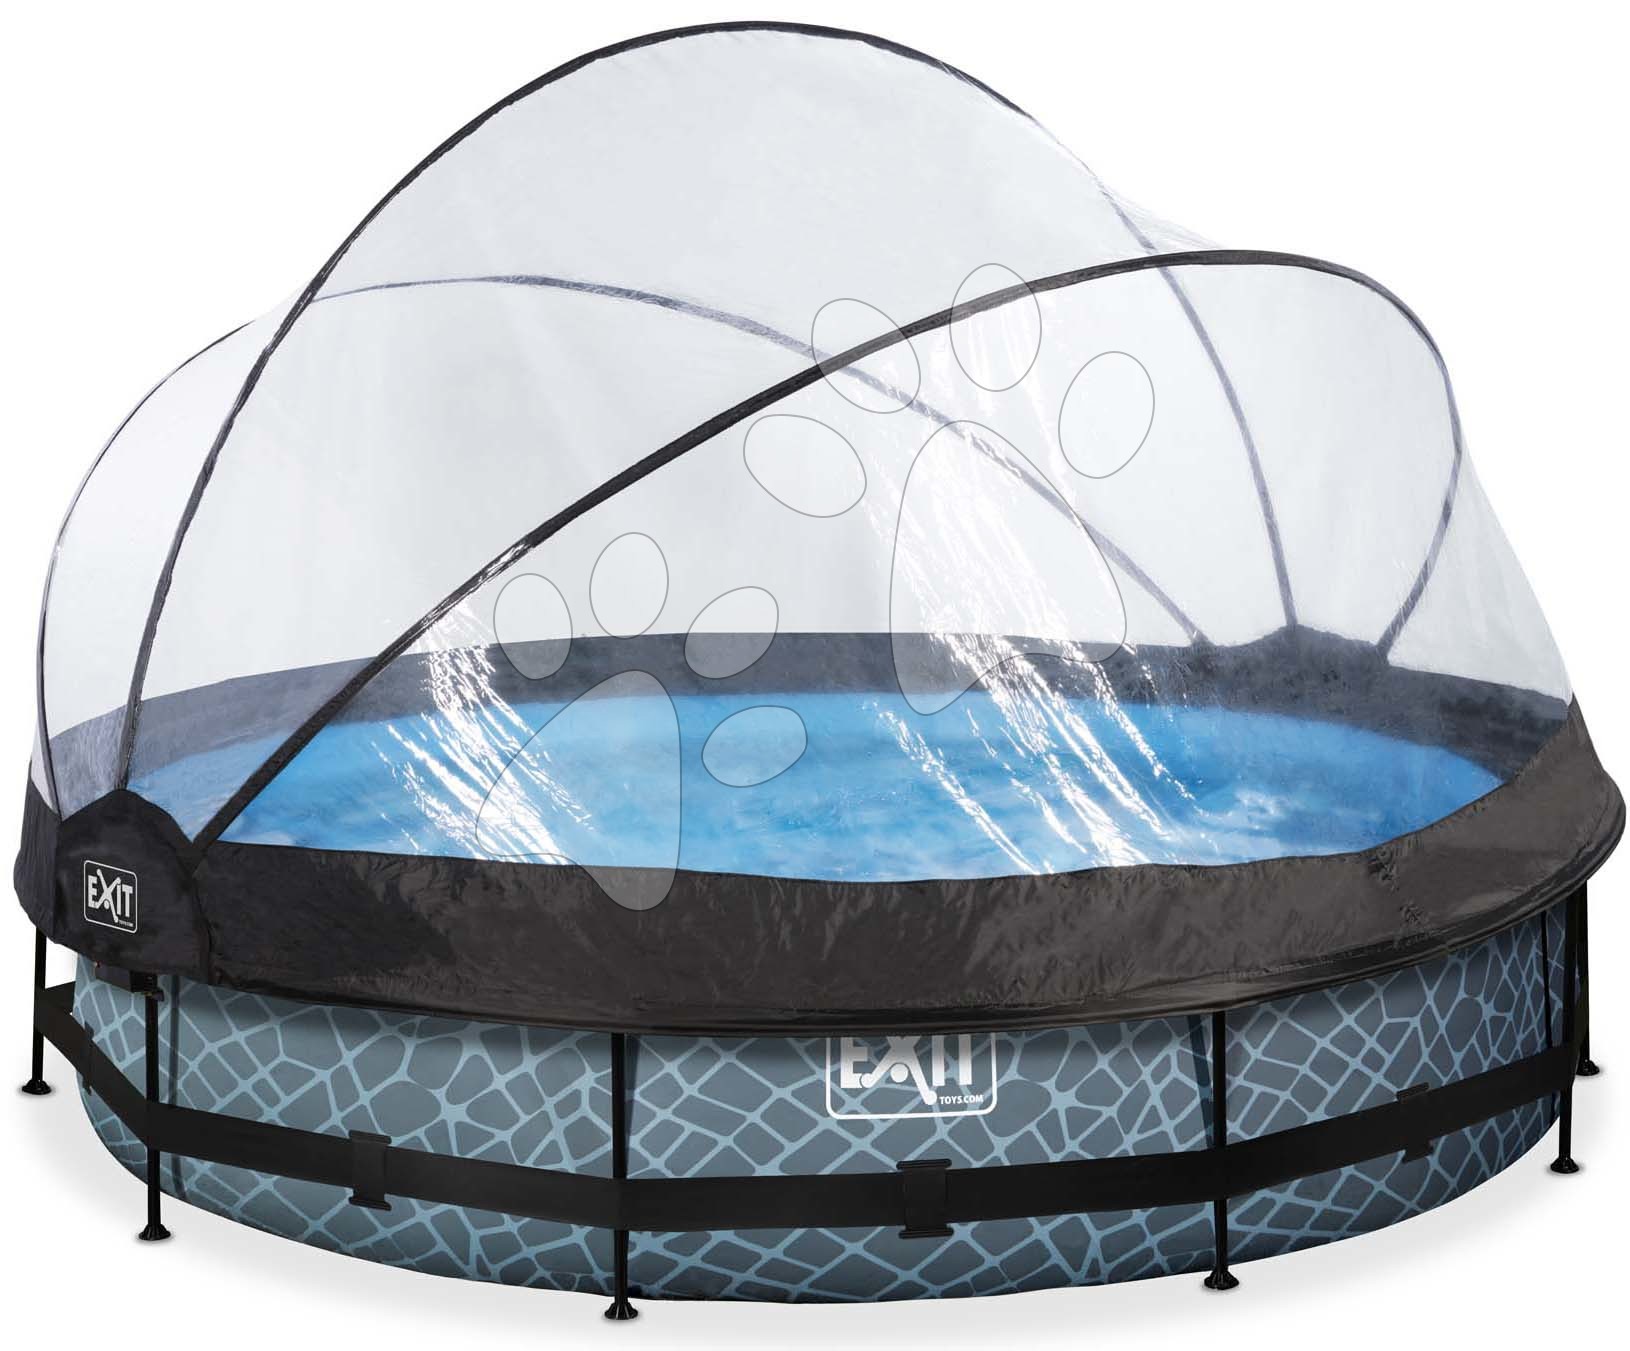 Bazén s krytem a filtrací Stone pool Exit Toys kruhový ocelová konstrukce 360*76 cm šedý od 6 let